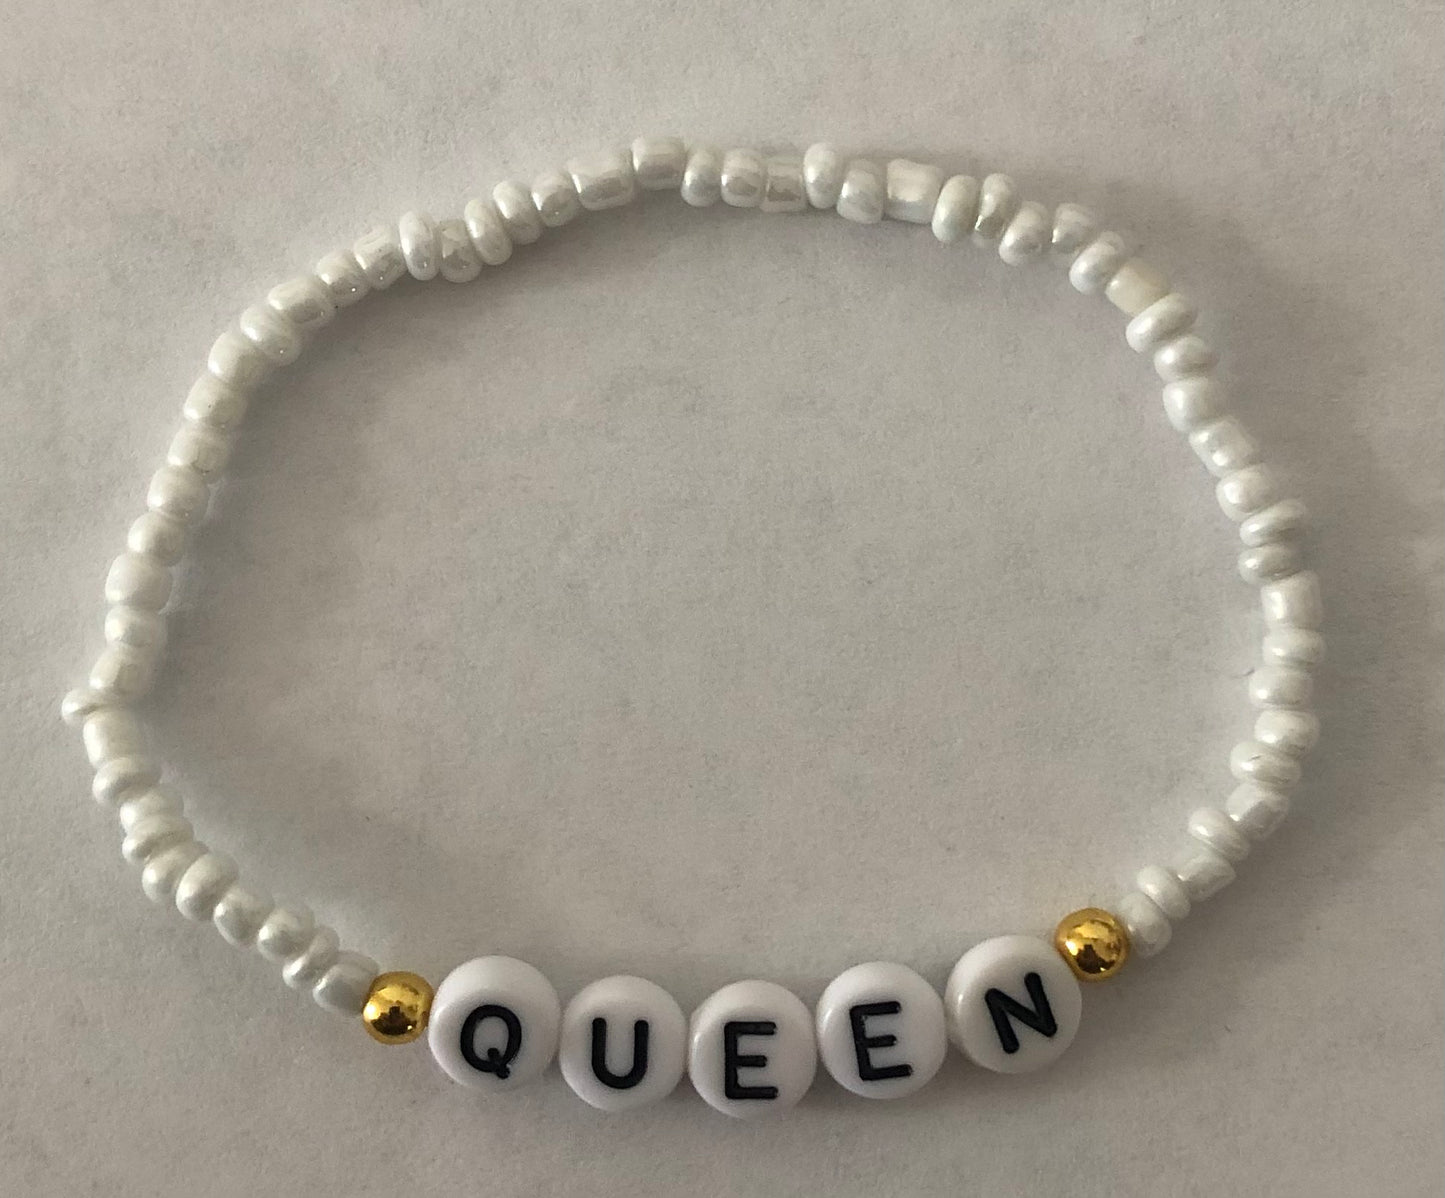 Queen empowering bracelet